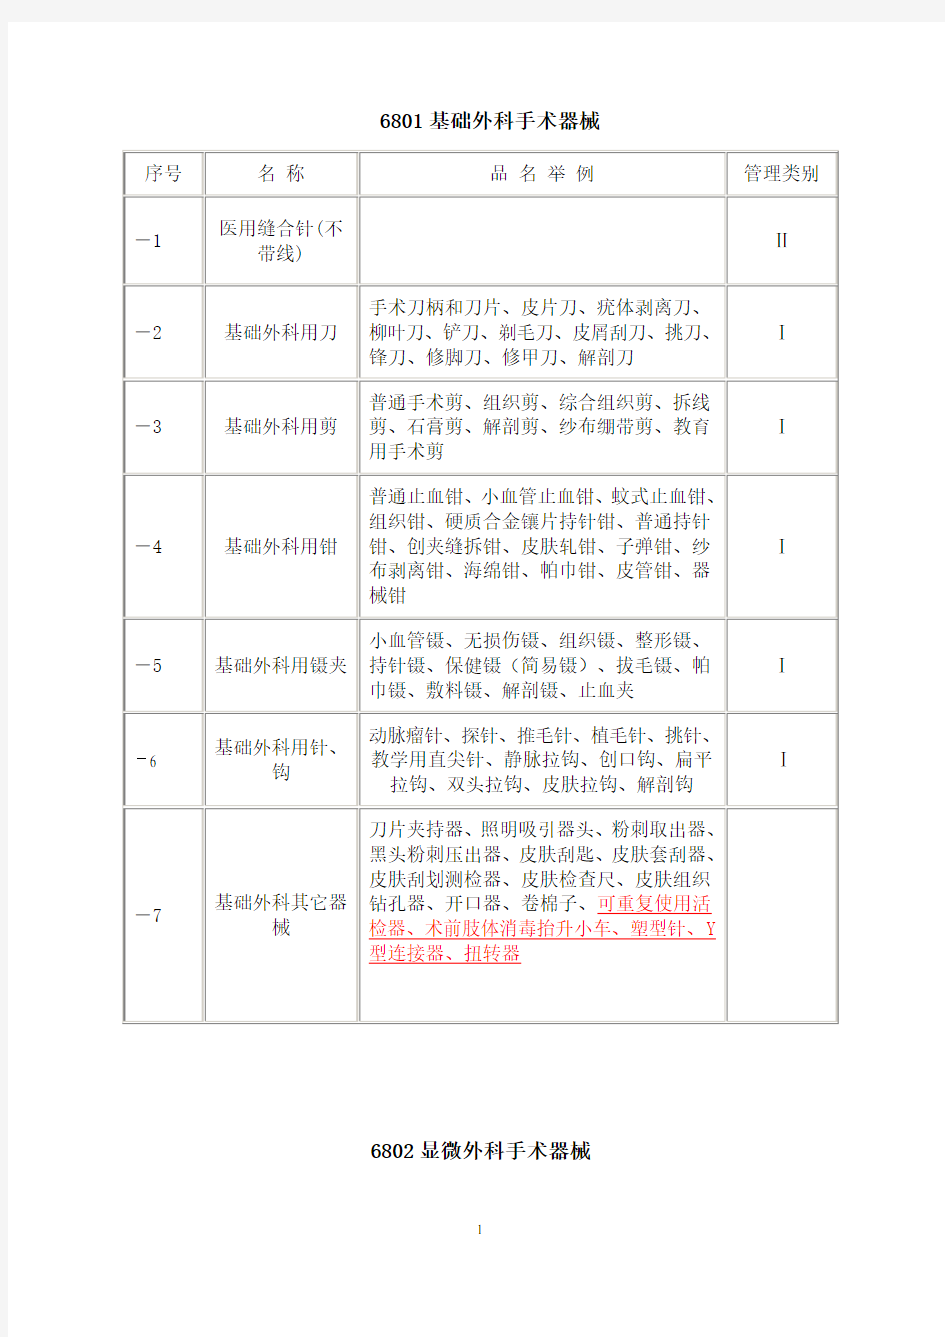 中国医疗器械分类目录表1